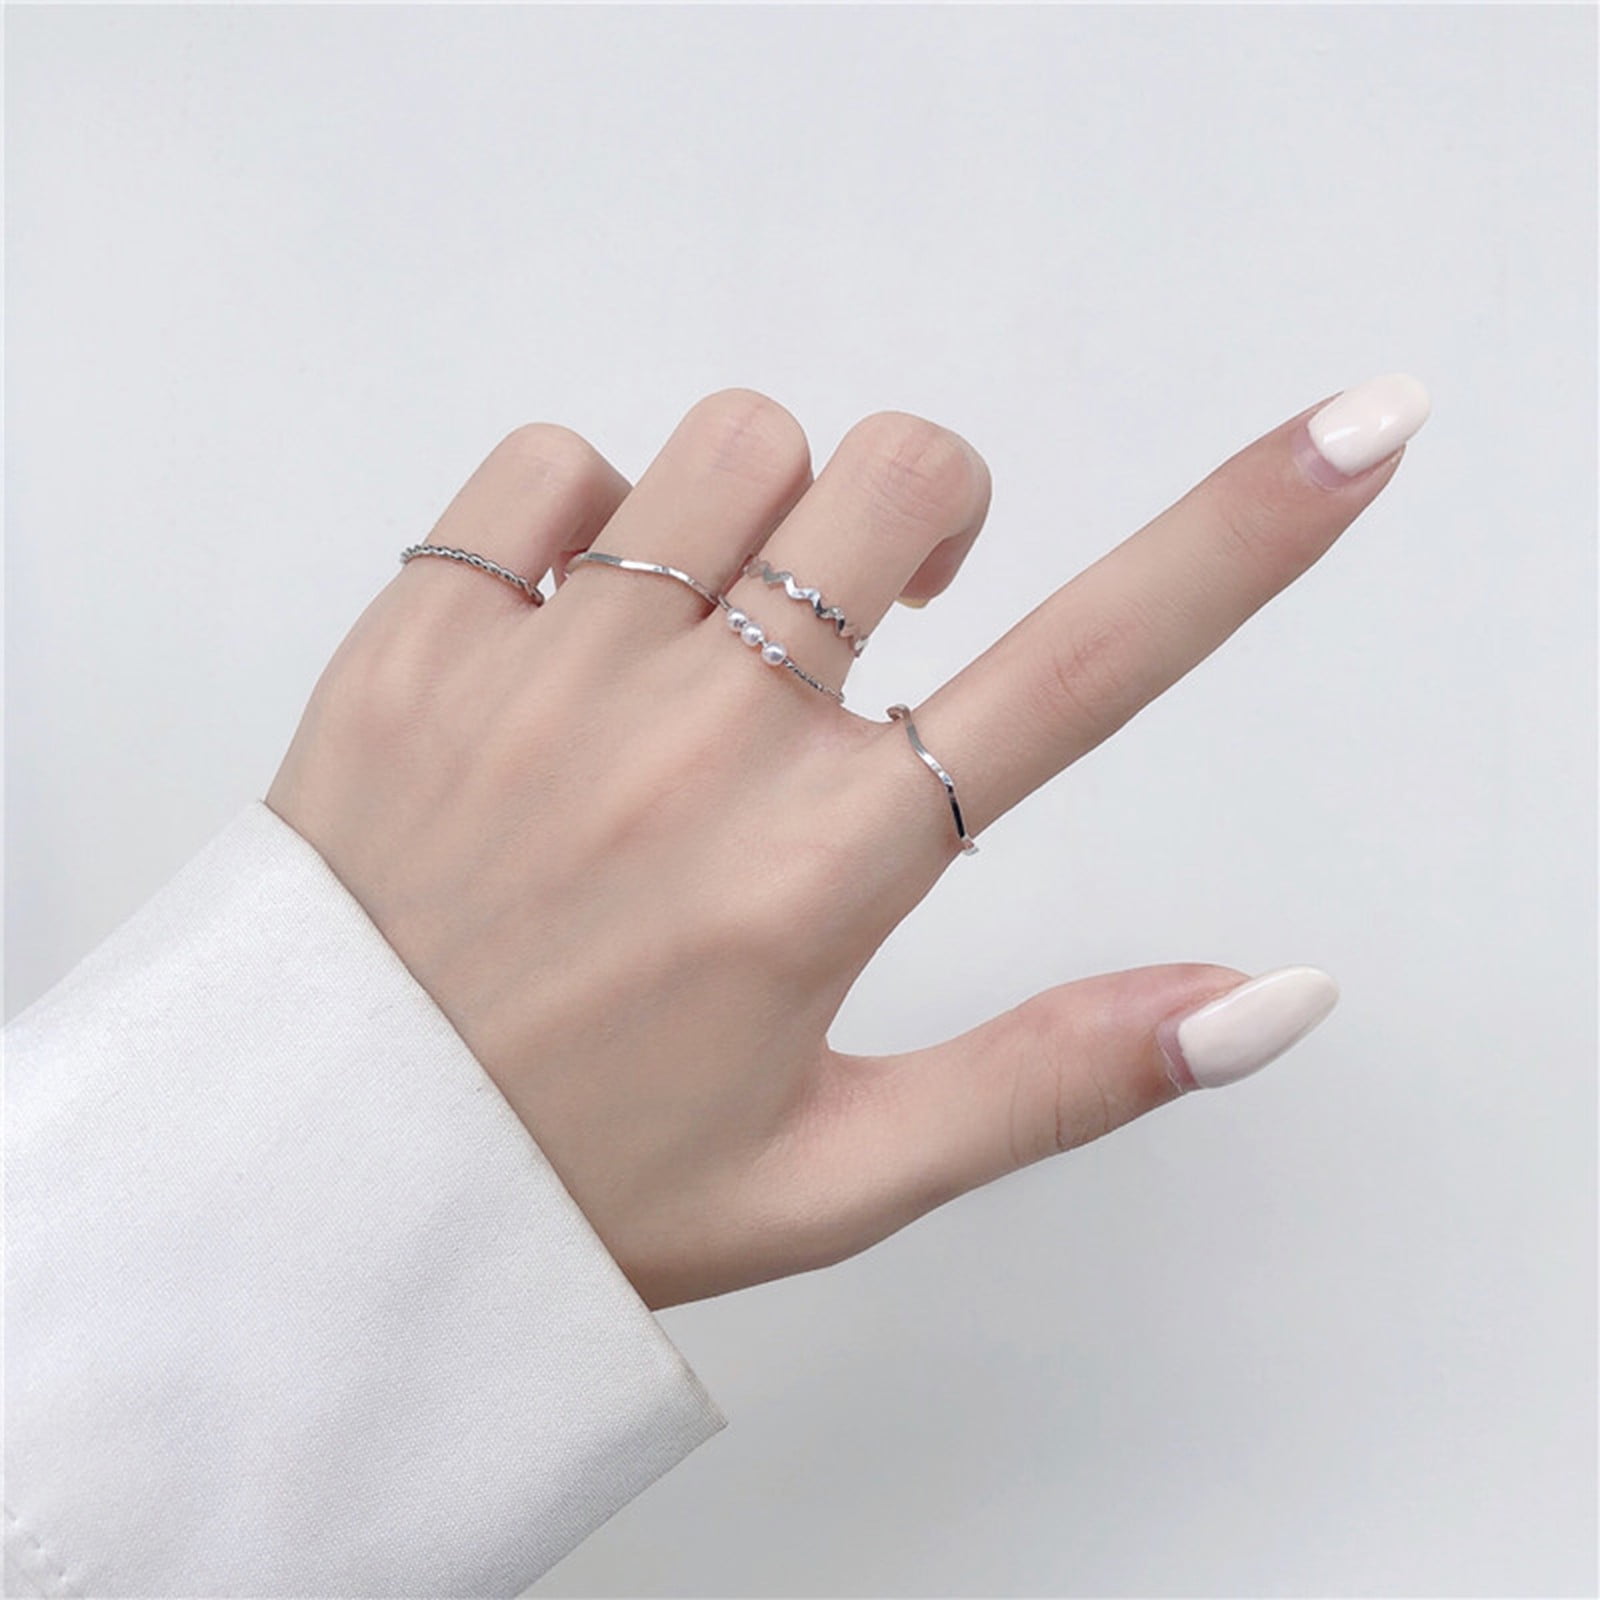 Tiny Daisy Ring - Elisa Solomon Jewelry